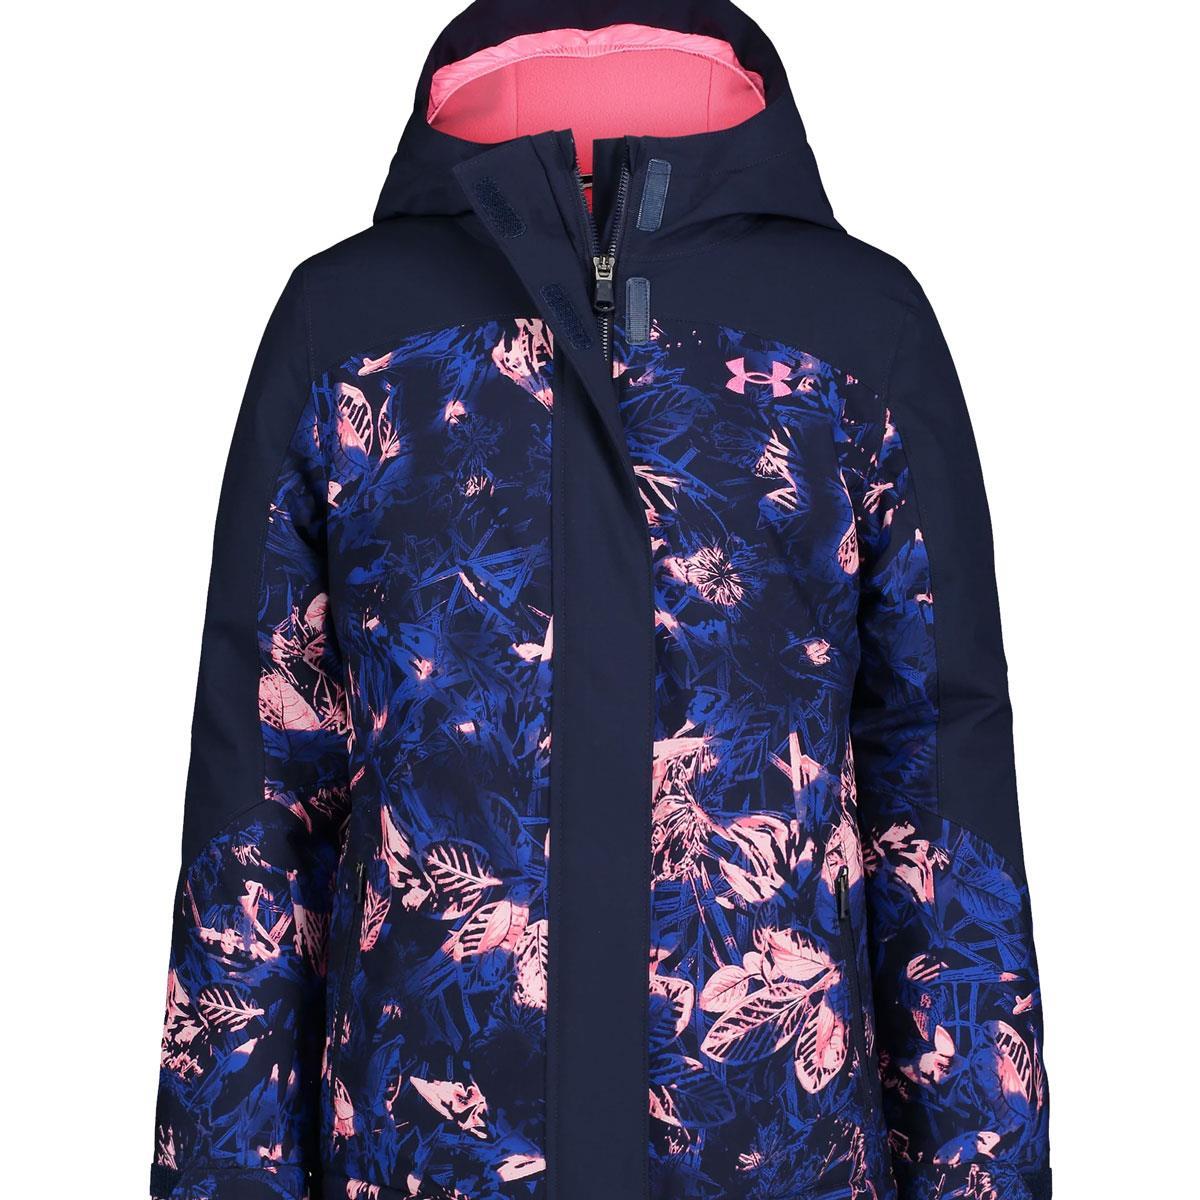 Buy Girls Midnight Navy Jacket, Under Armour online